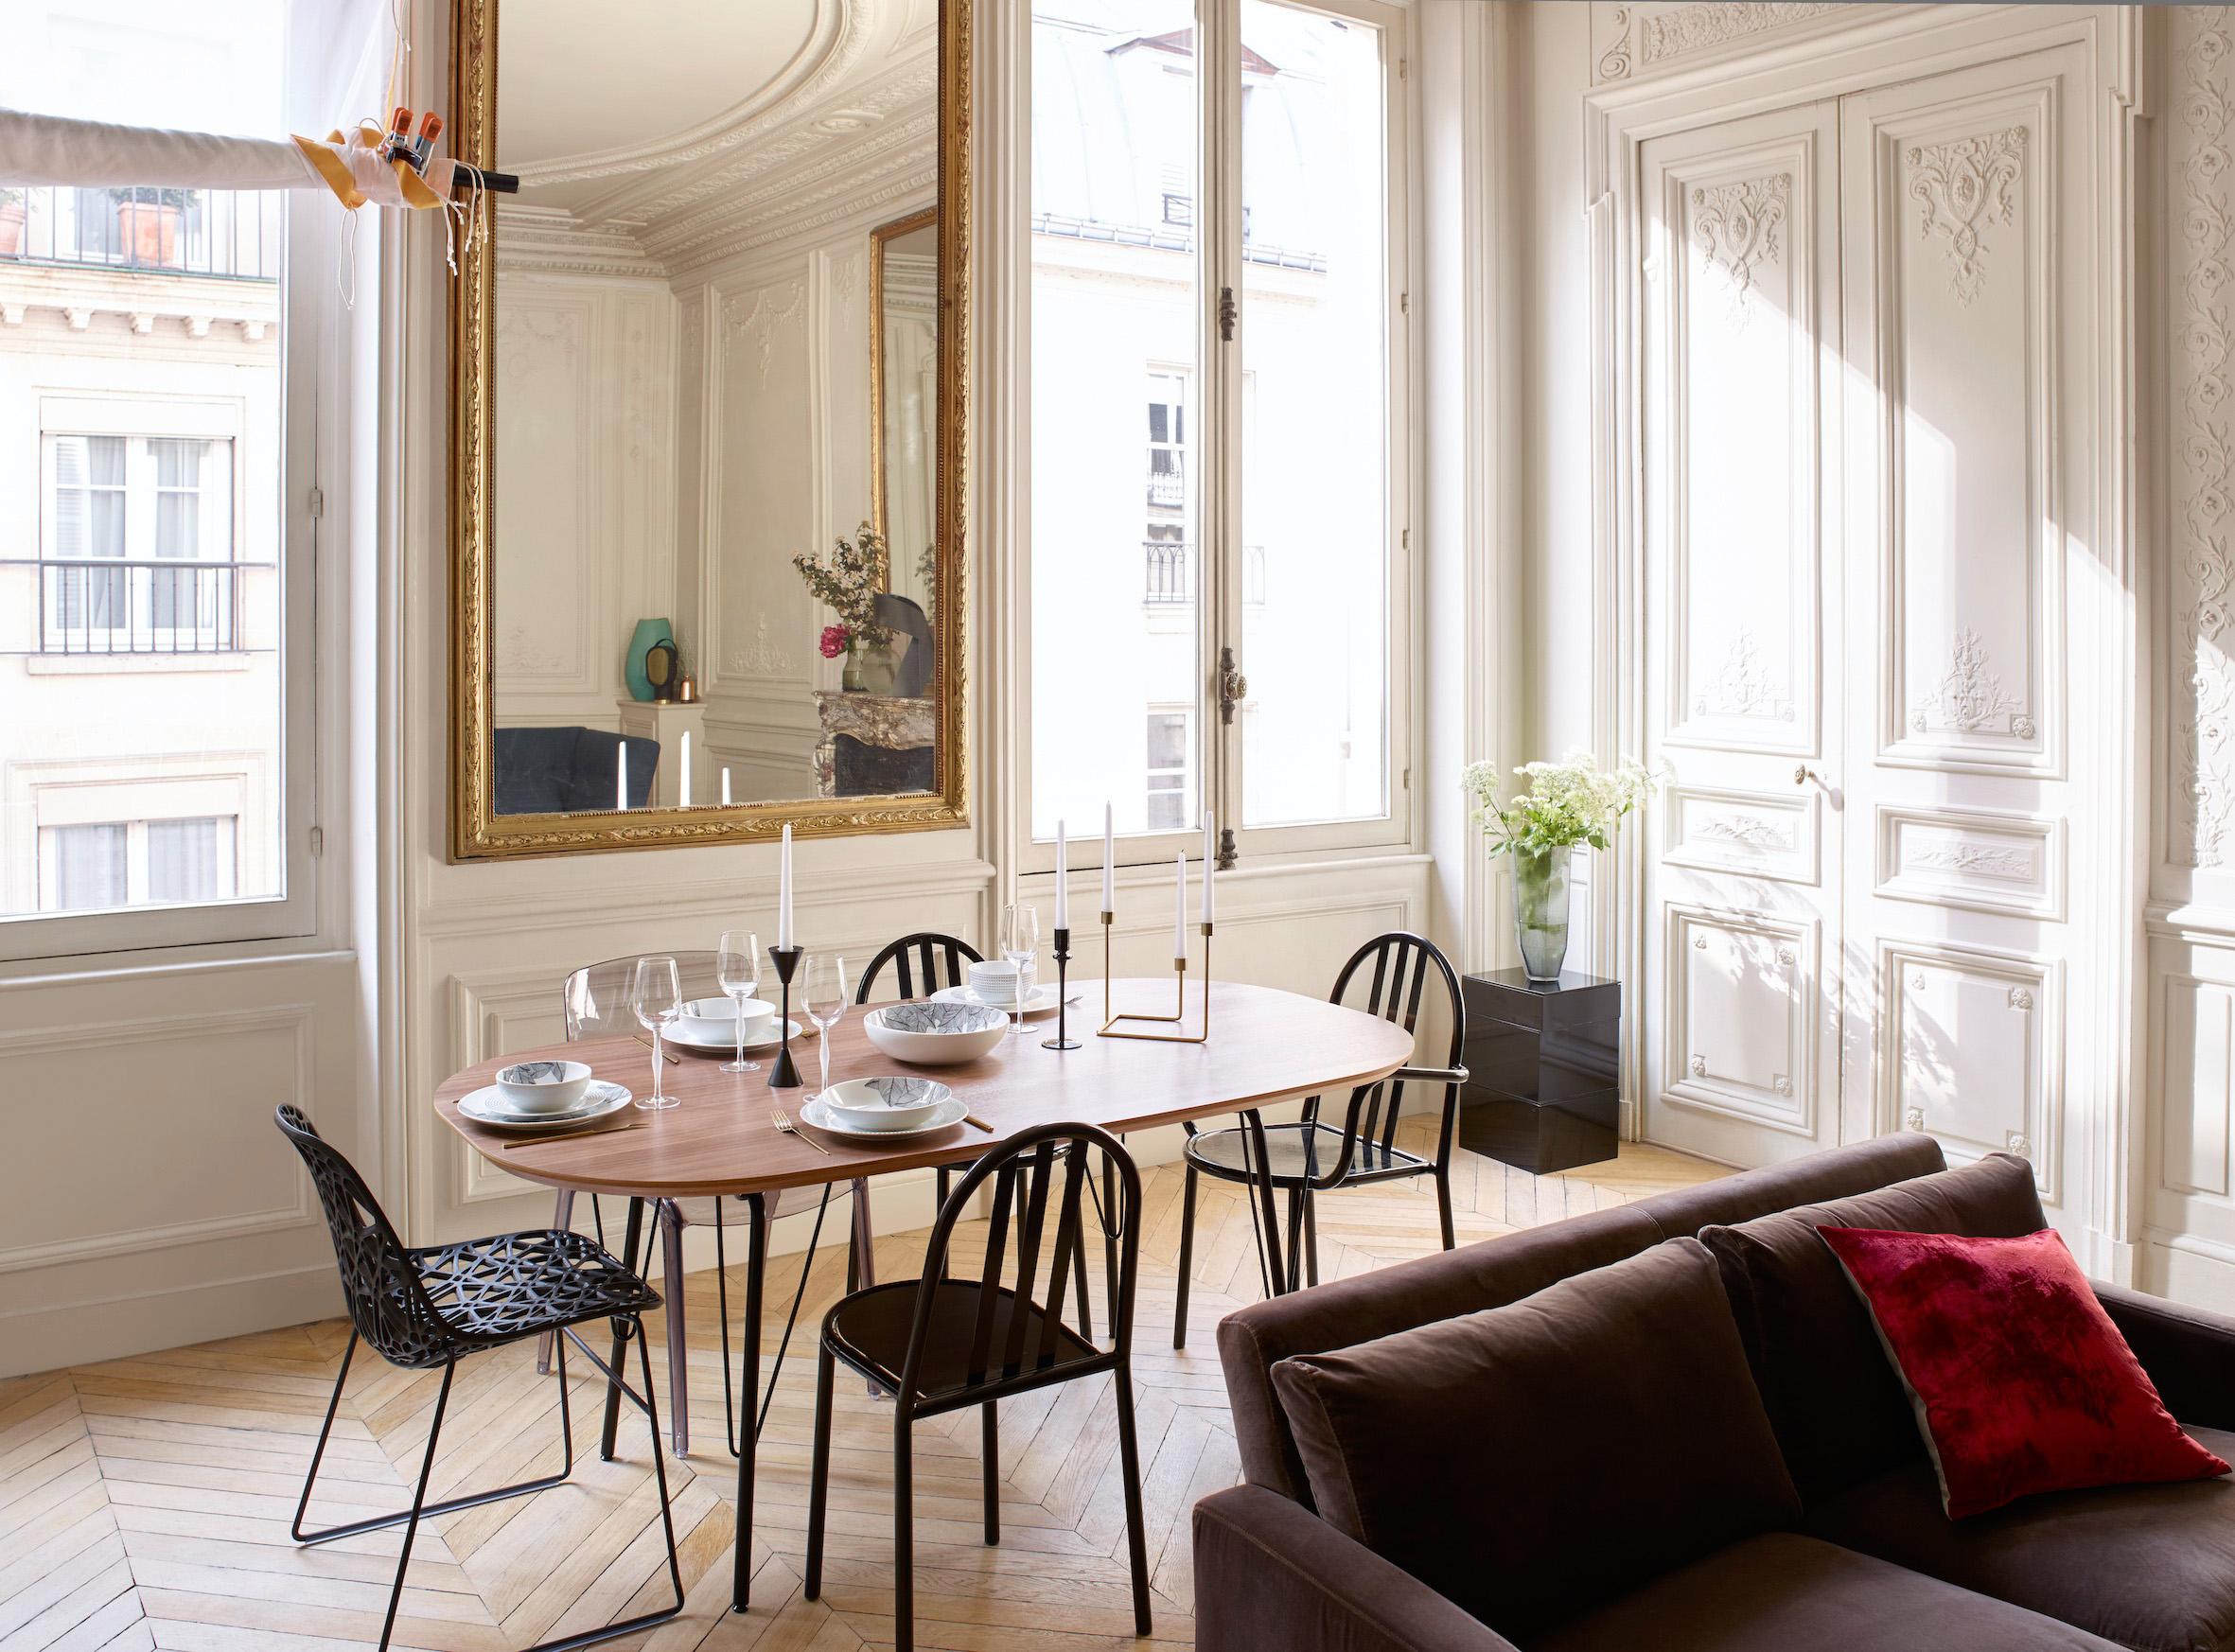 Moderne Möbel im klassischen Wohnzimmer #wohnzimmer #parkettboden #goldfarbenerspiegel #braunessofa #zimmergestaltung ©Habitat